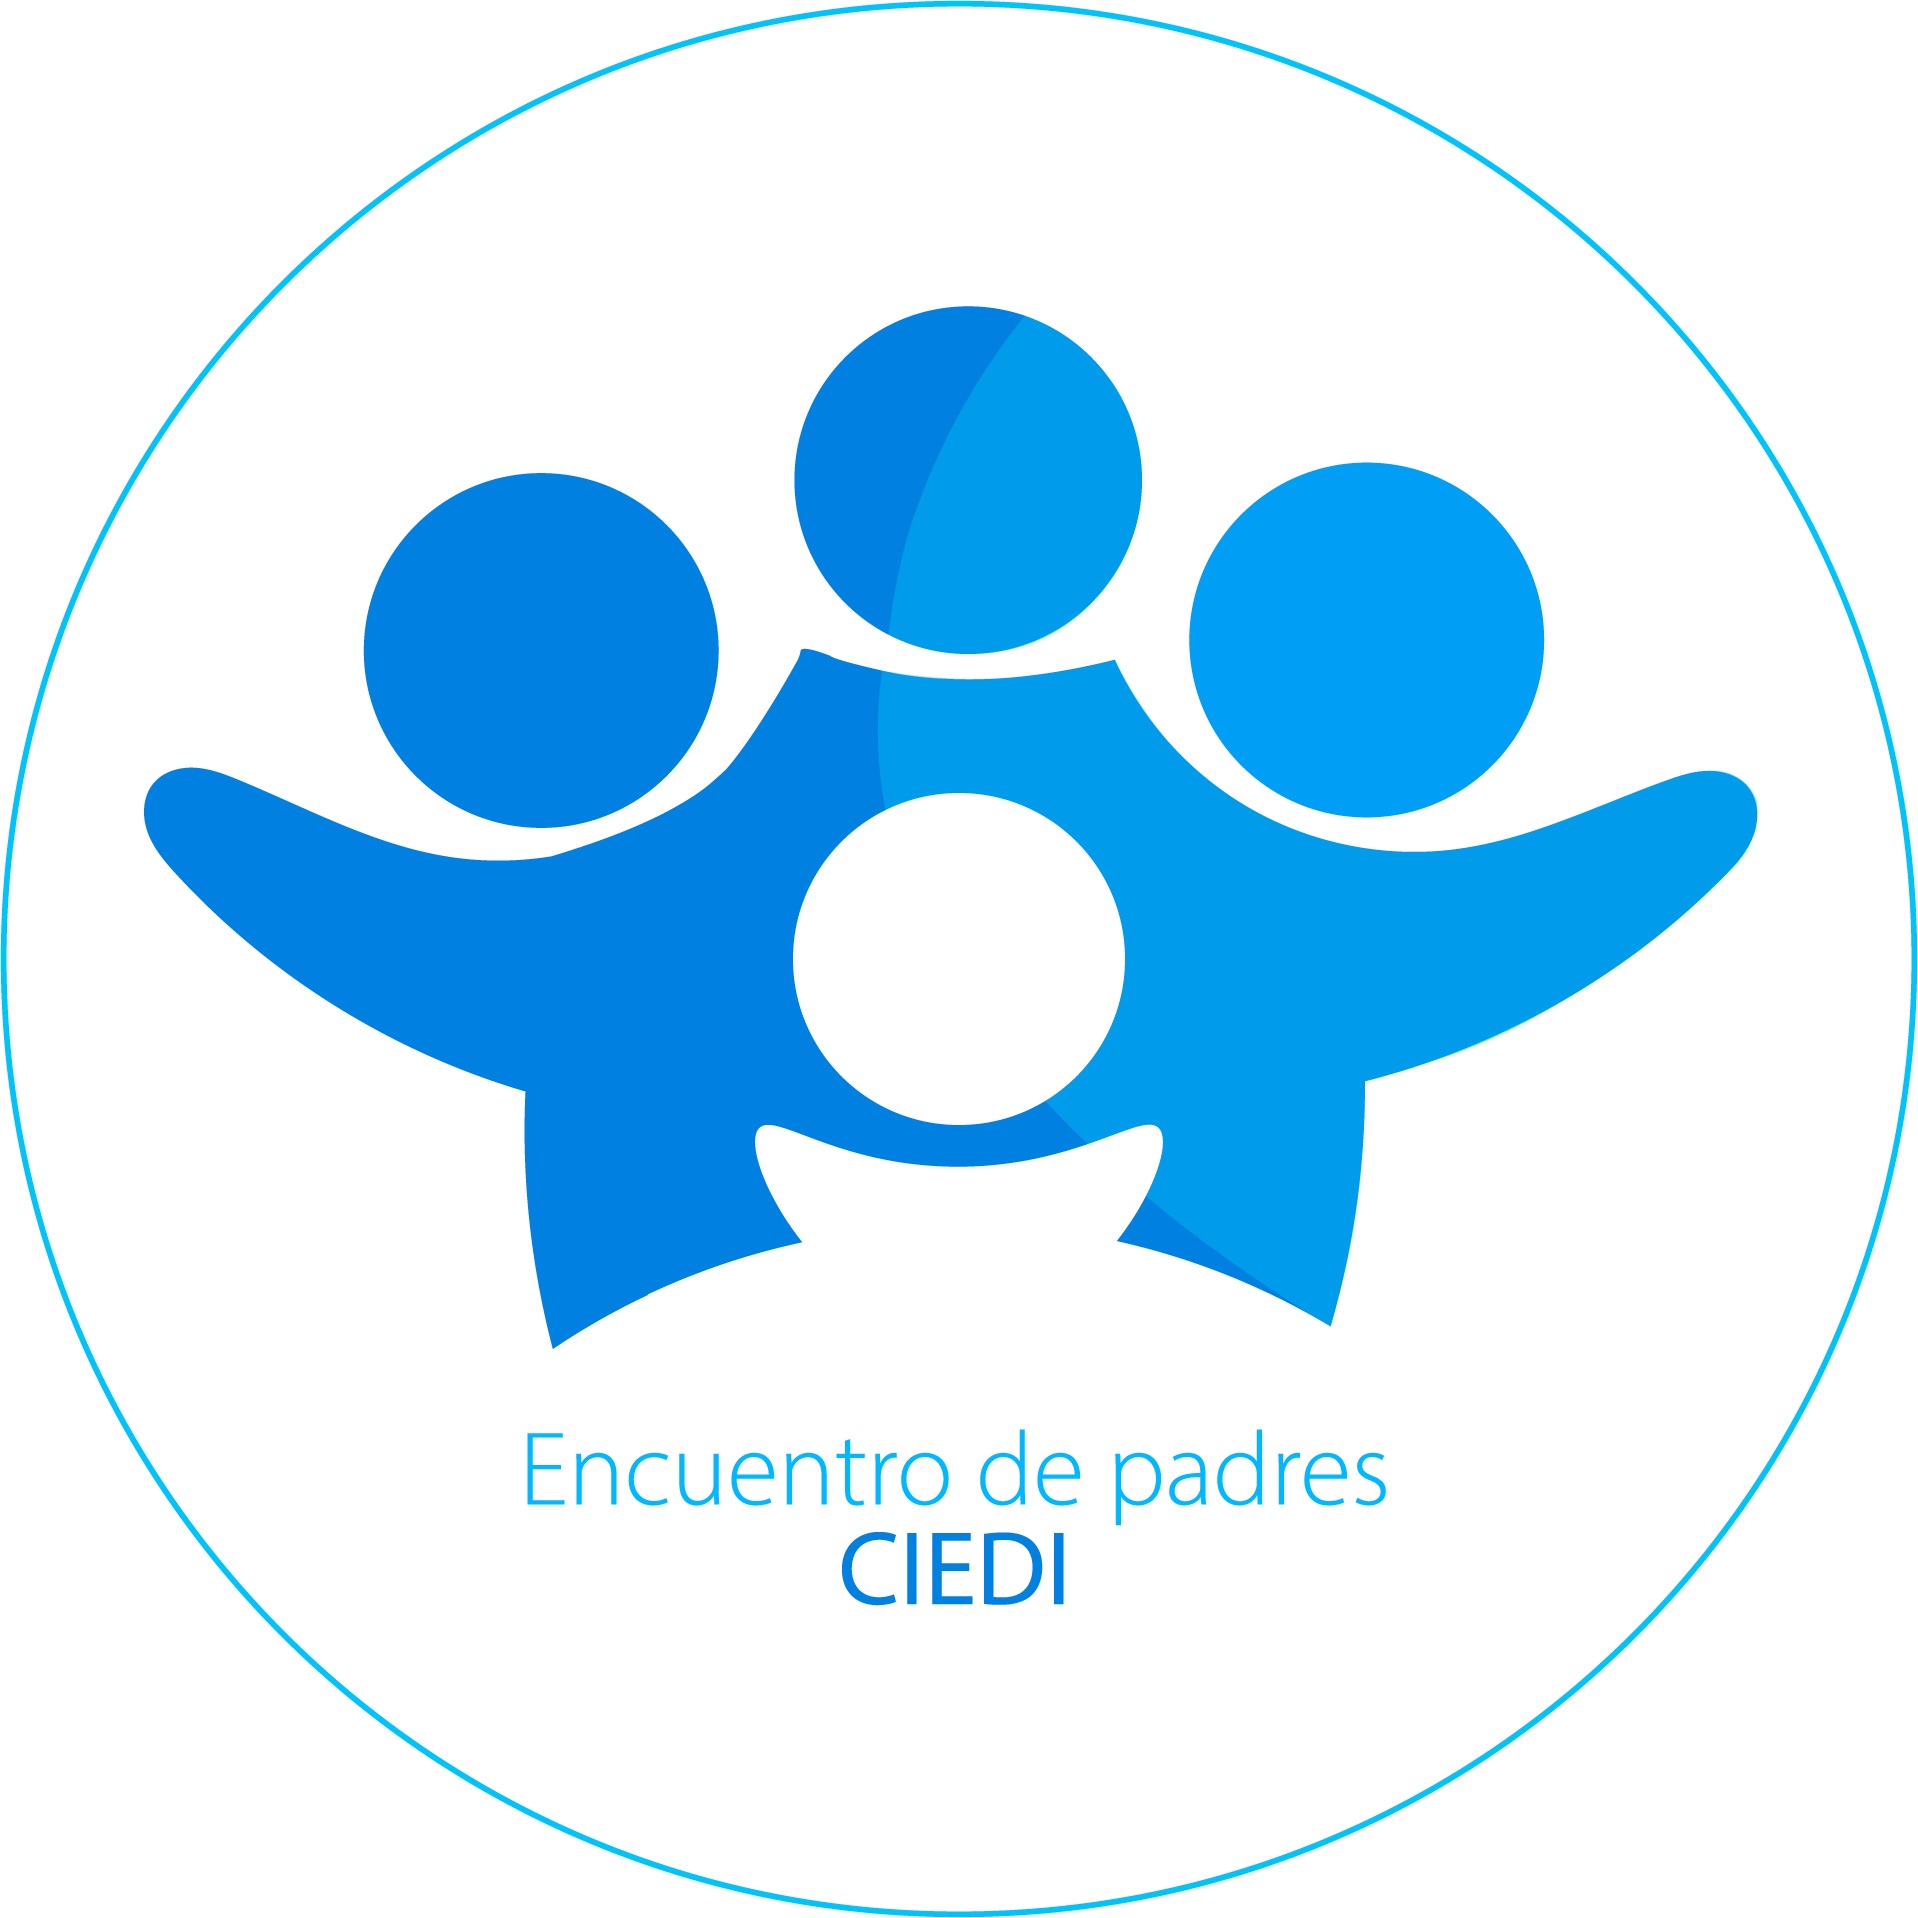 Encuentros de Padres CIEDI - EPC - Fortalecimiento Equipo Casa - Colegio.